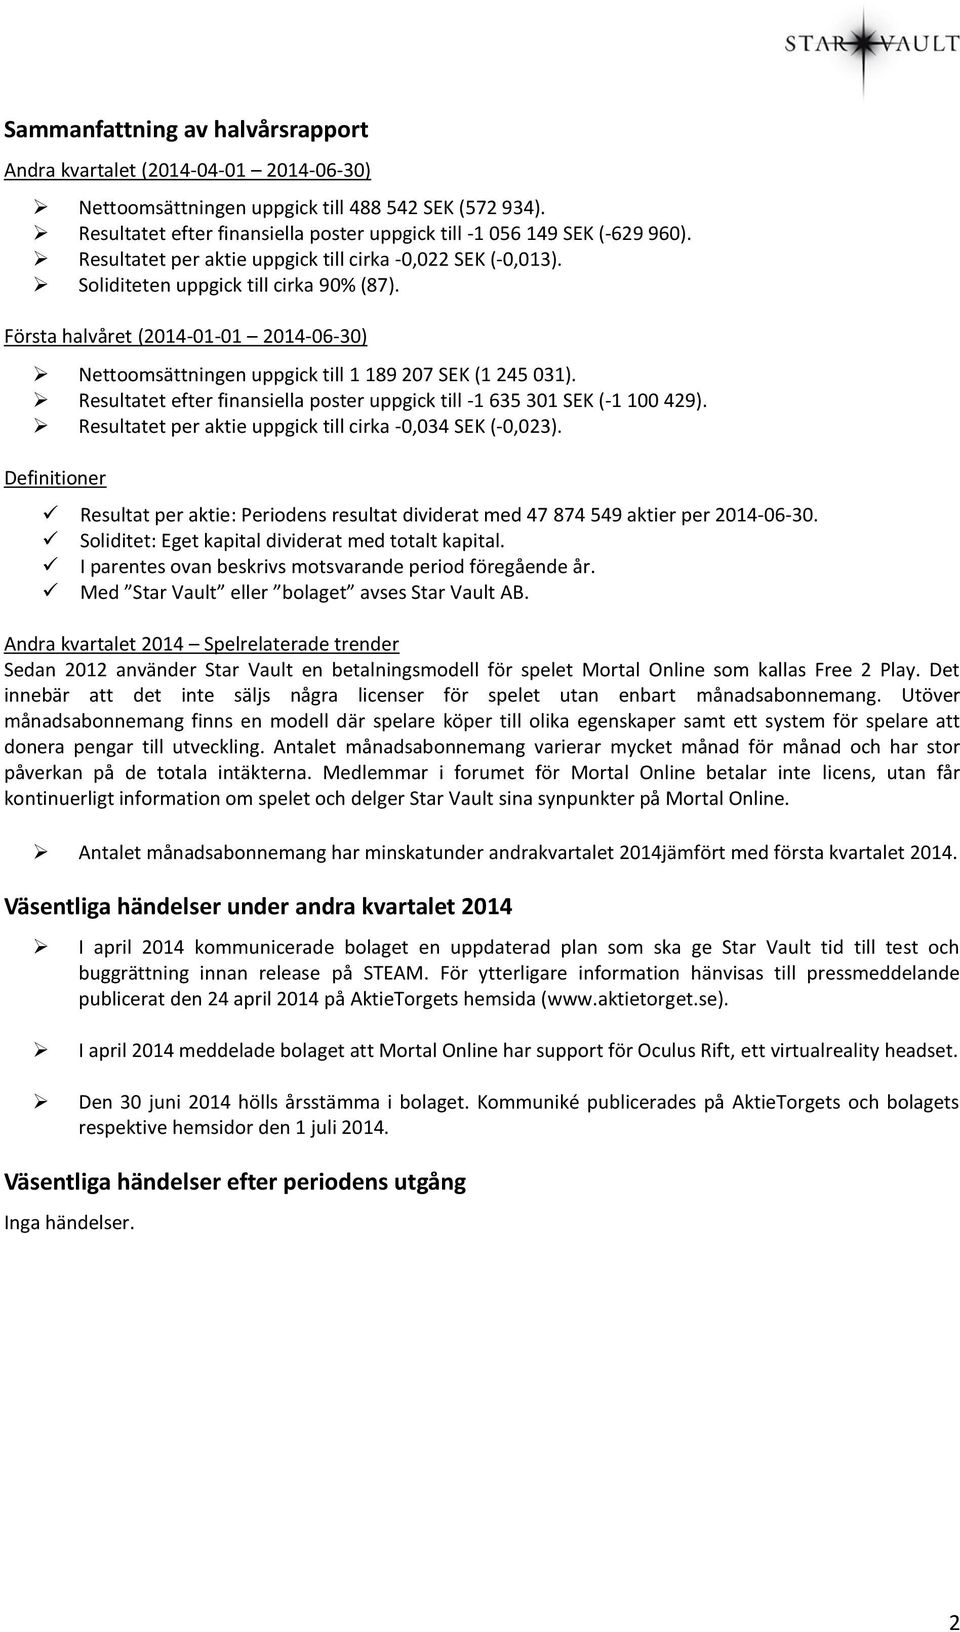 Första halvåret (2014-01-01 2014-06-30) Nettoomsättningen uppgick till 1 189 207 SEK (1 245 031). Resultatet efter finansiella poster uppgick till -1 635 301 SEK (-1 100 429).